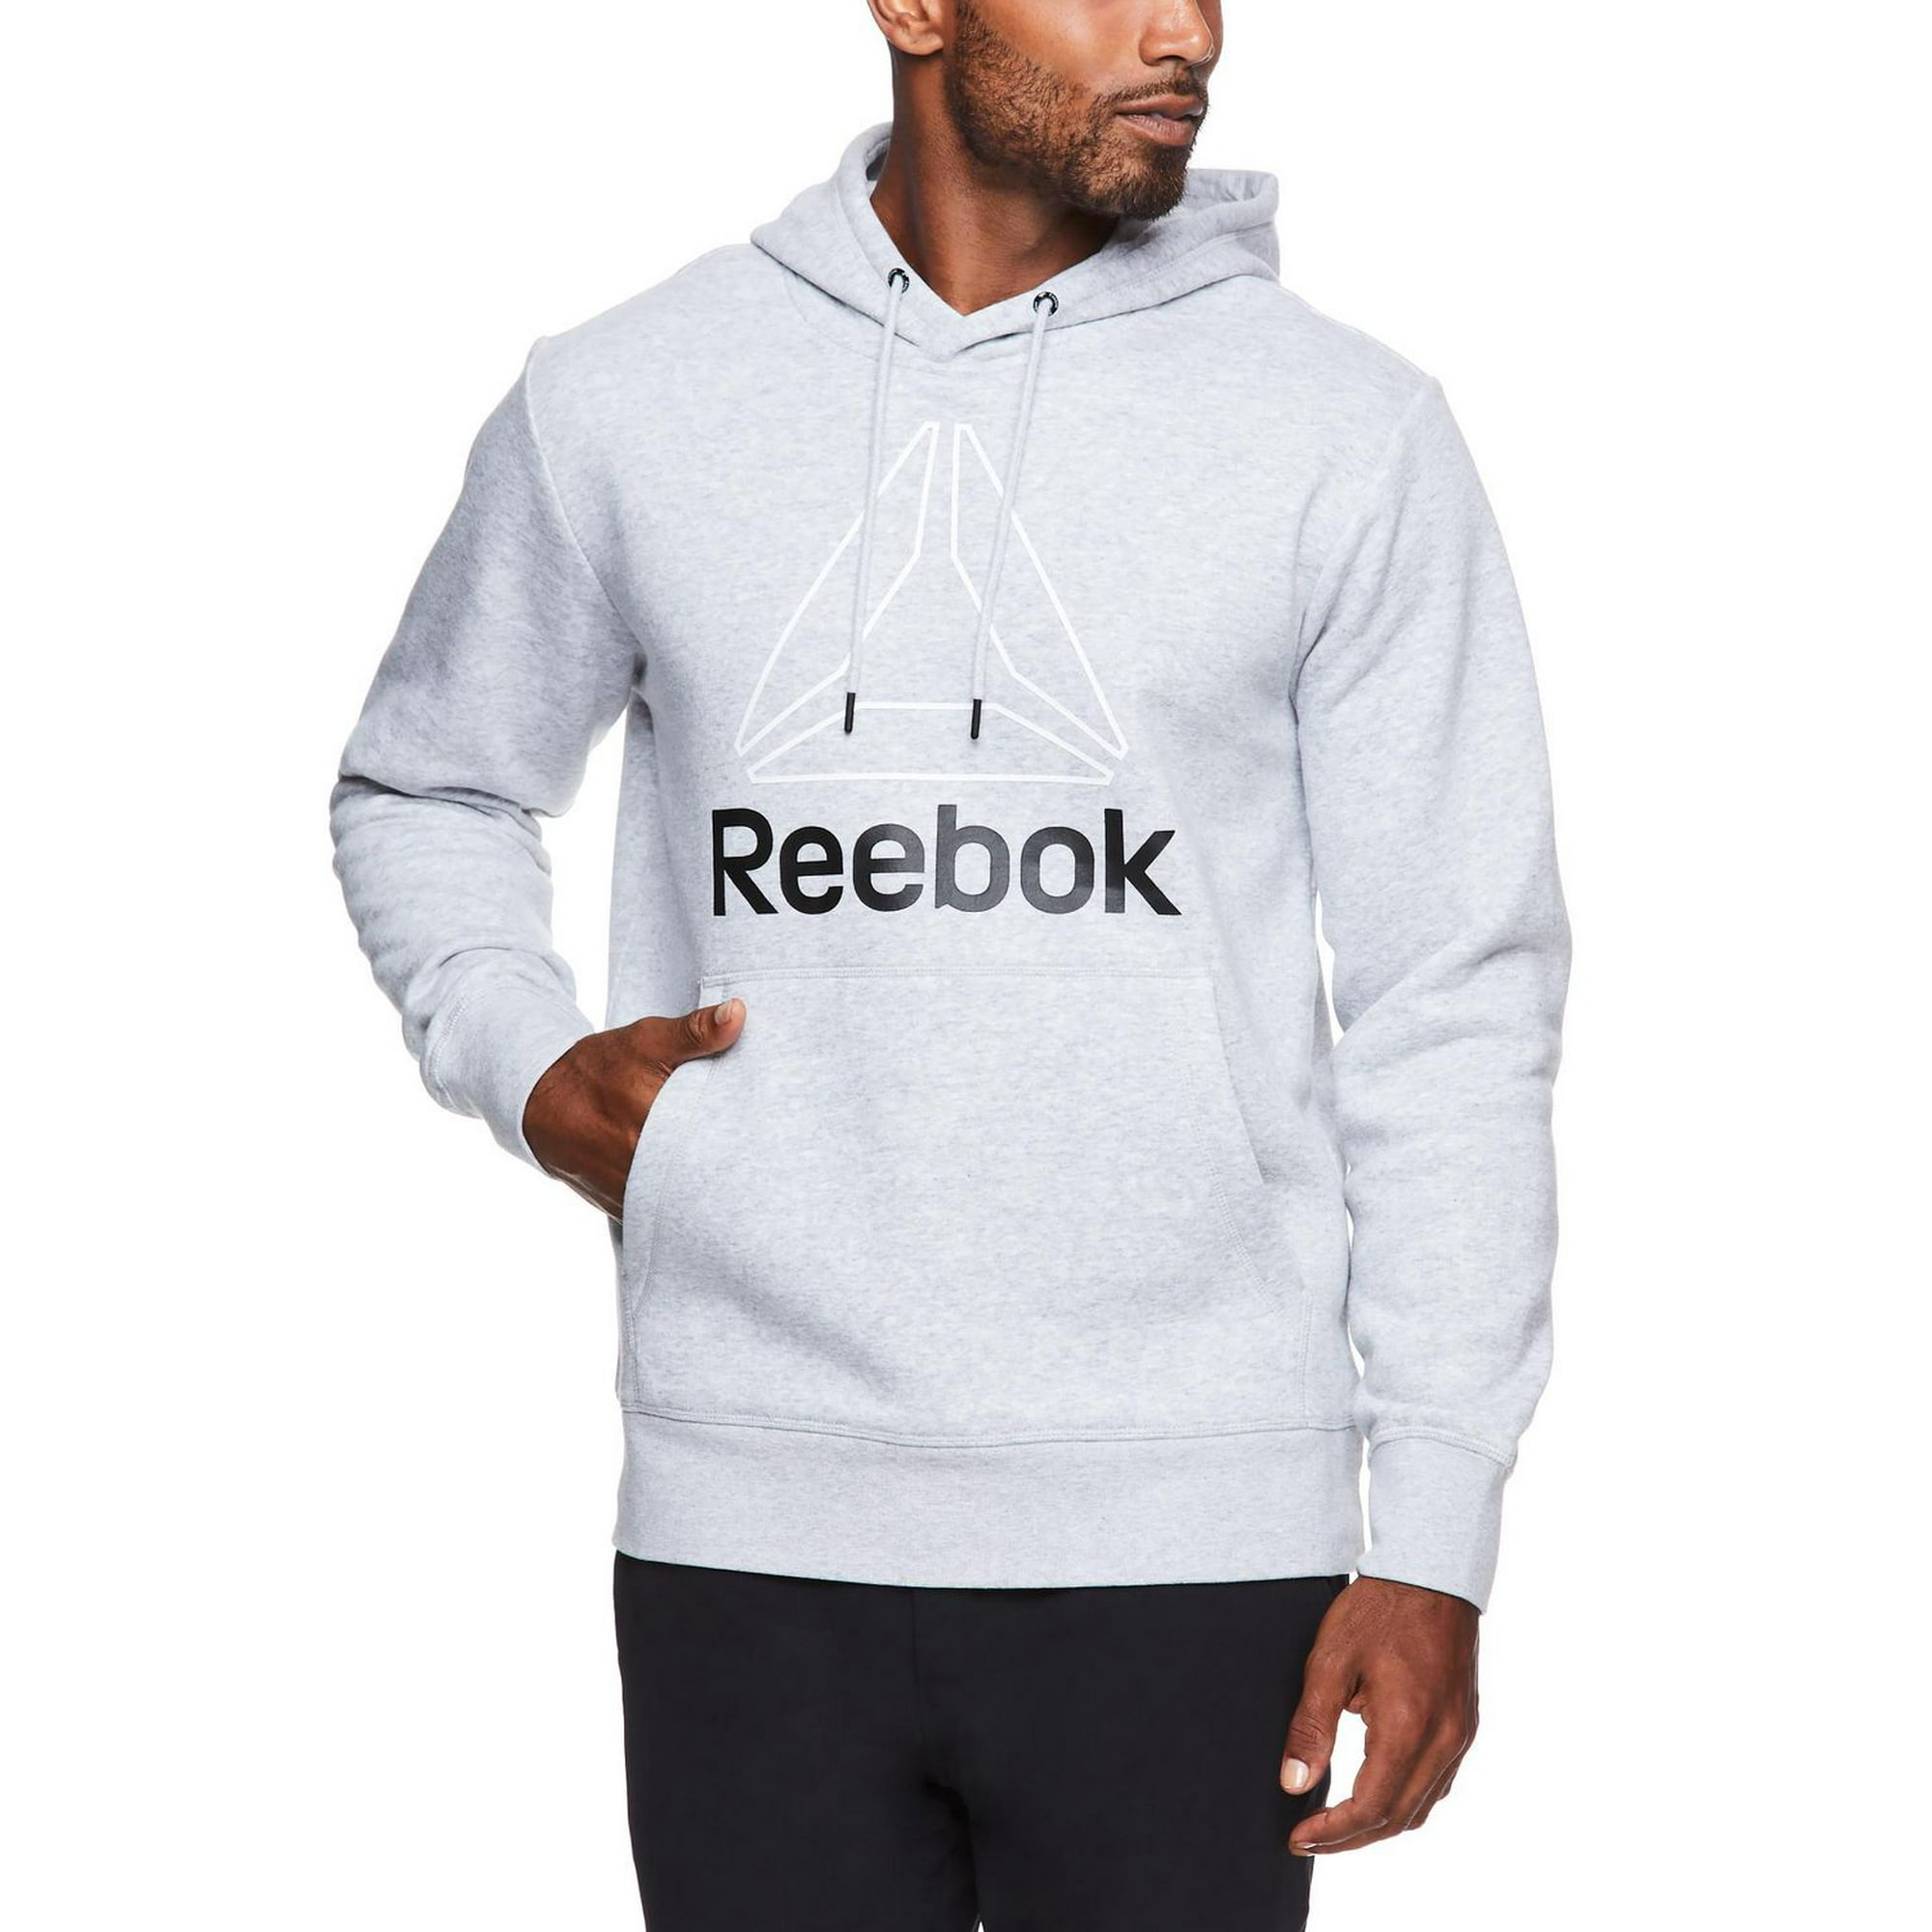  Reebok Boys' Sweatsuit Set - 2 Piece Fleece Hoodie